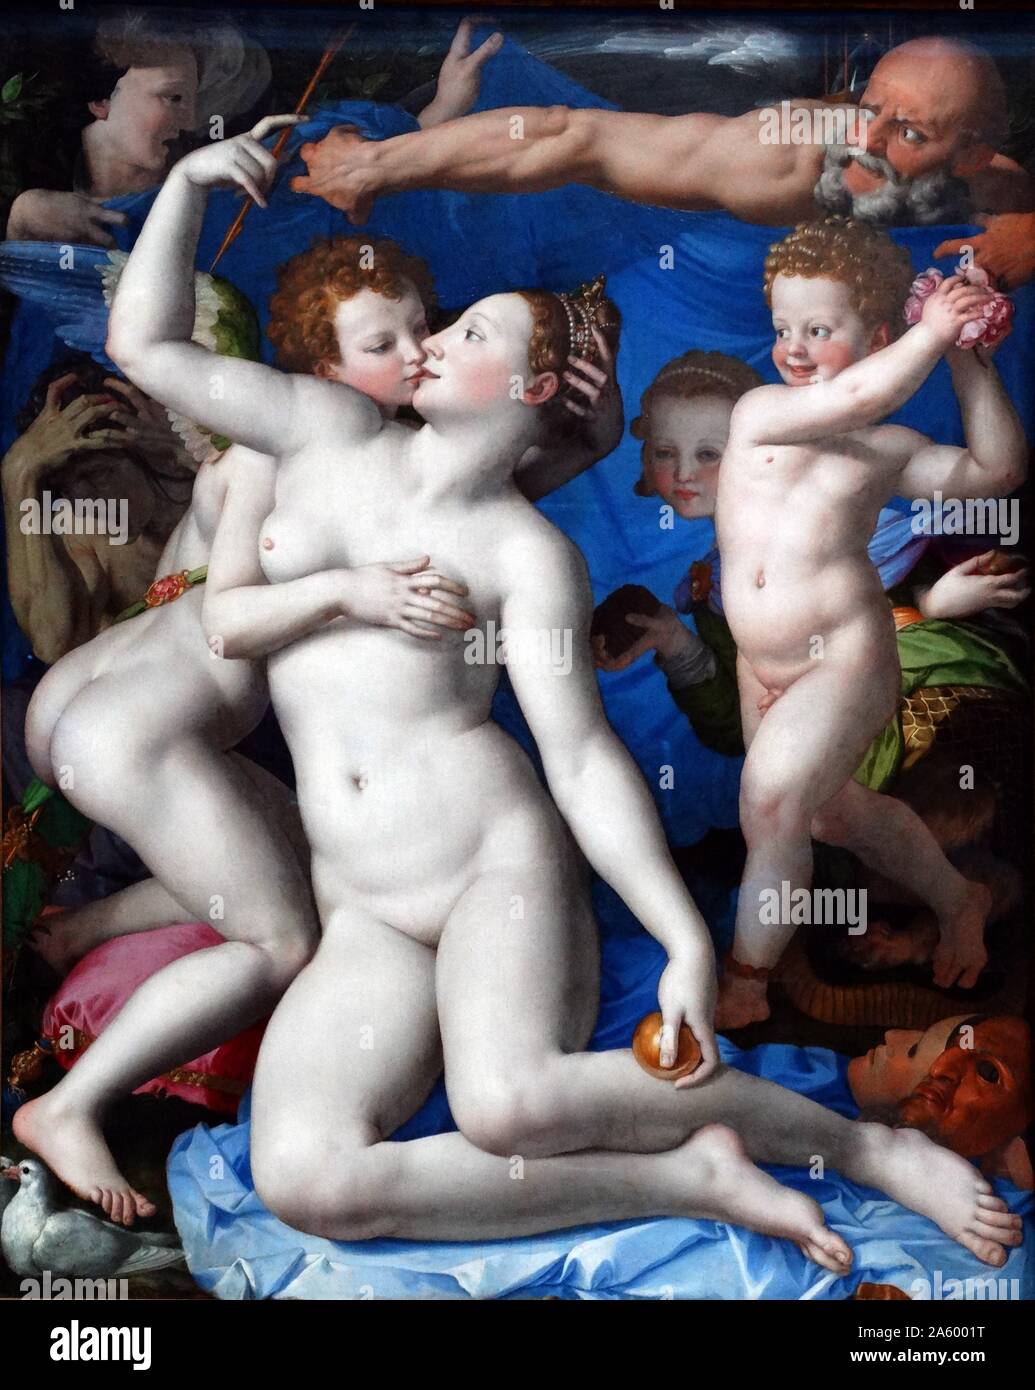 Pintura titulada "Alegoría con Venus y Cupido" por Agnolo di Cosimo (1503-1572), pintor manierista italiano de Florencia. Fecha del siglo XVI. Foto de stock